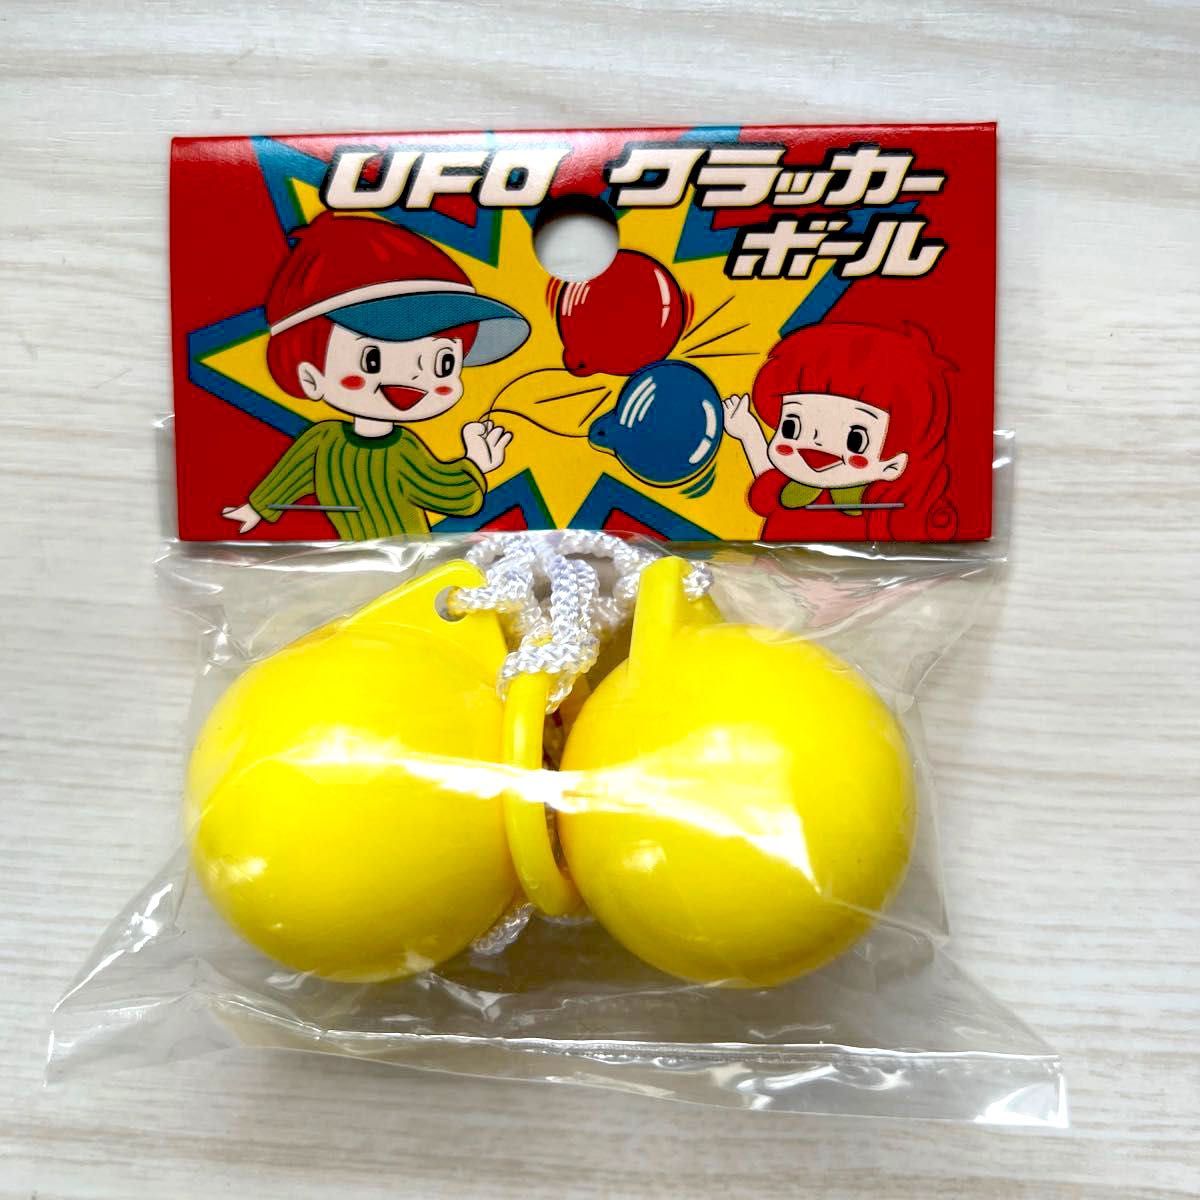 UFOクラッカーボール アメリカンクラッカー 昭和のおもちゃ カチカチクラッカー